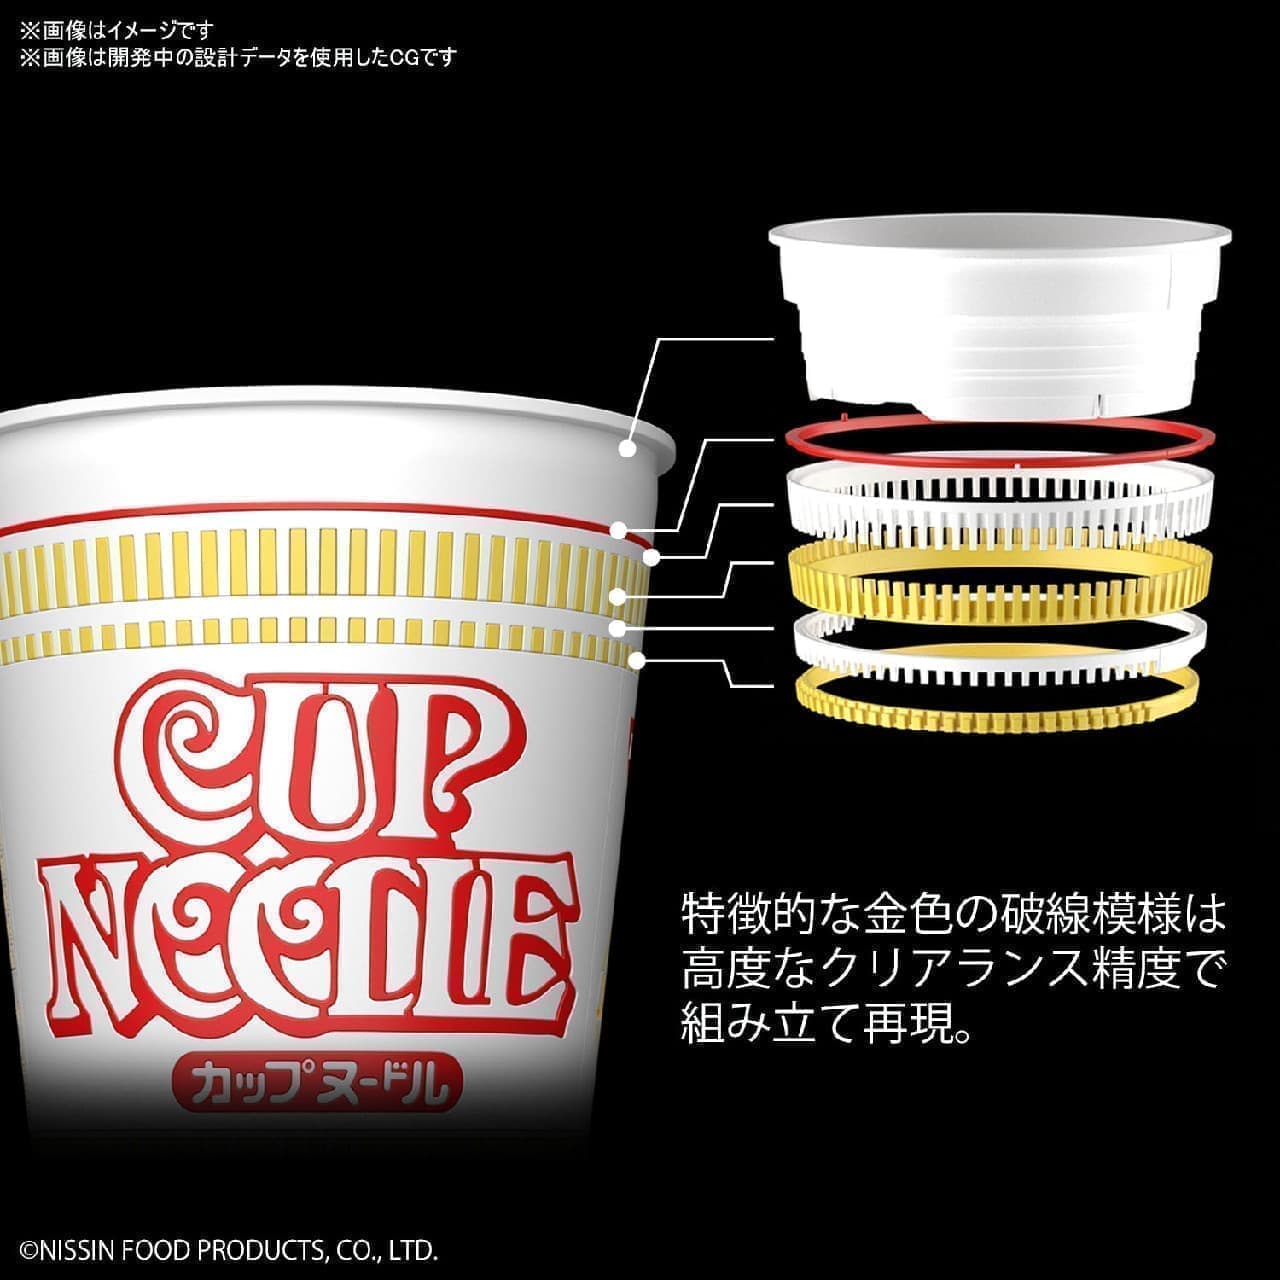 "Cup Noodle" plastic model